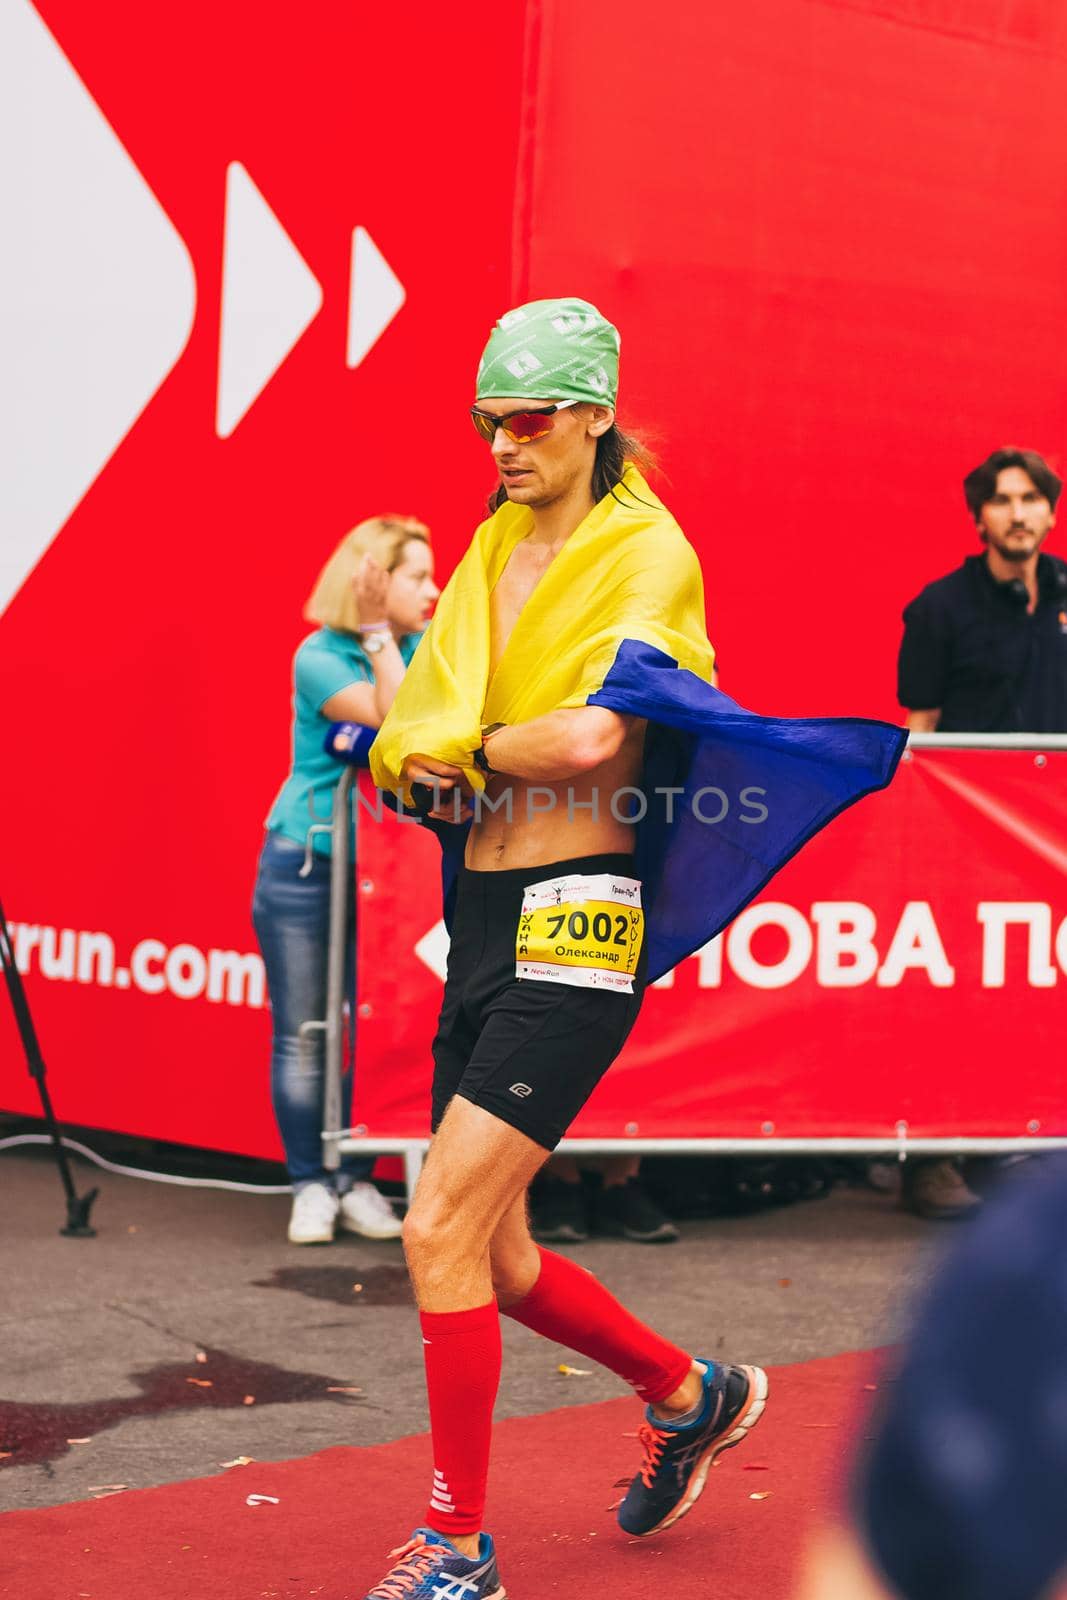 POLTAVA, UKRAINE - 1 SEPTEMBER 2019: A stylish man reaches finish line during Nova Poshta Poltava Half Marathon.